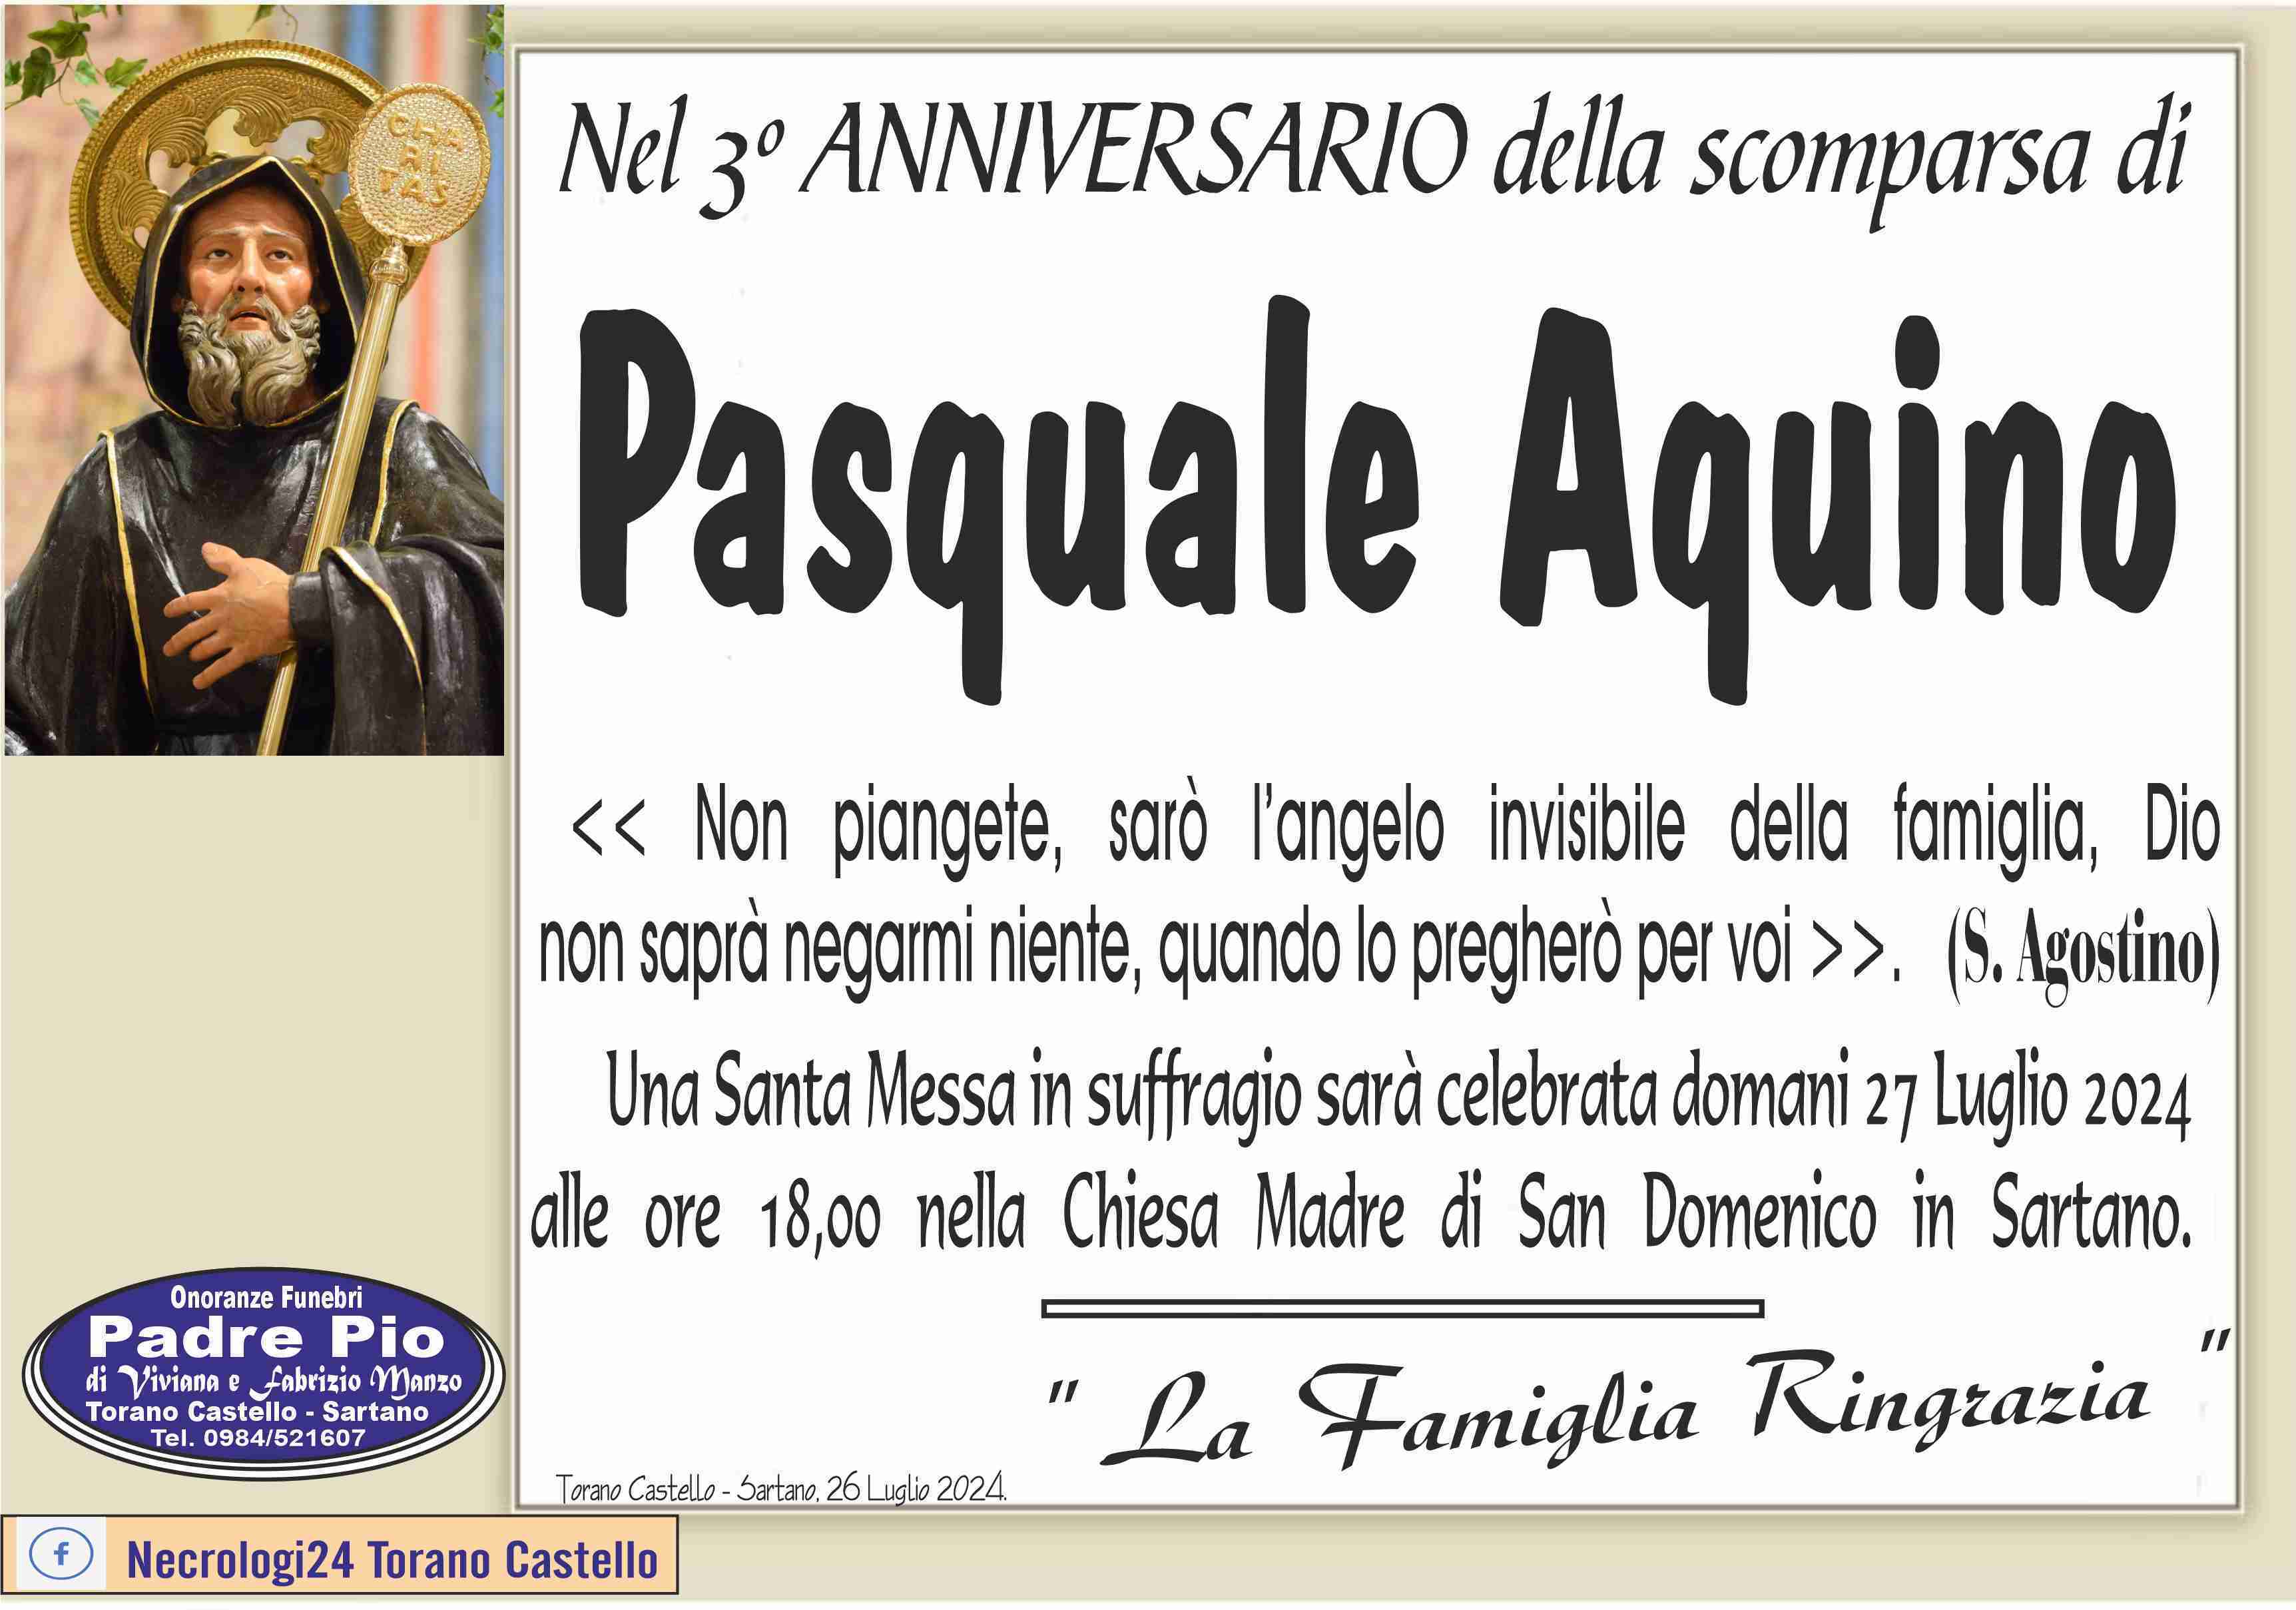 Pasquale Aquino